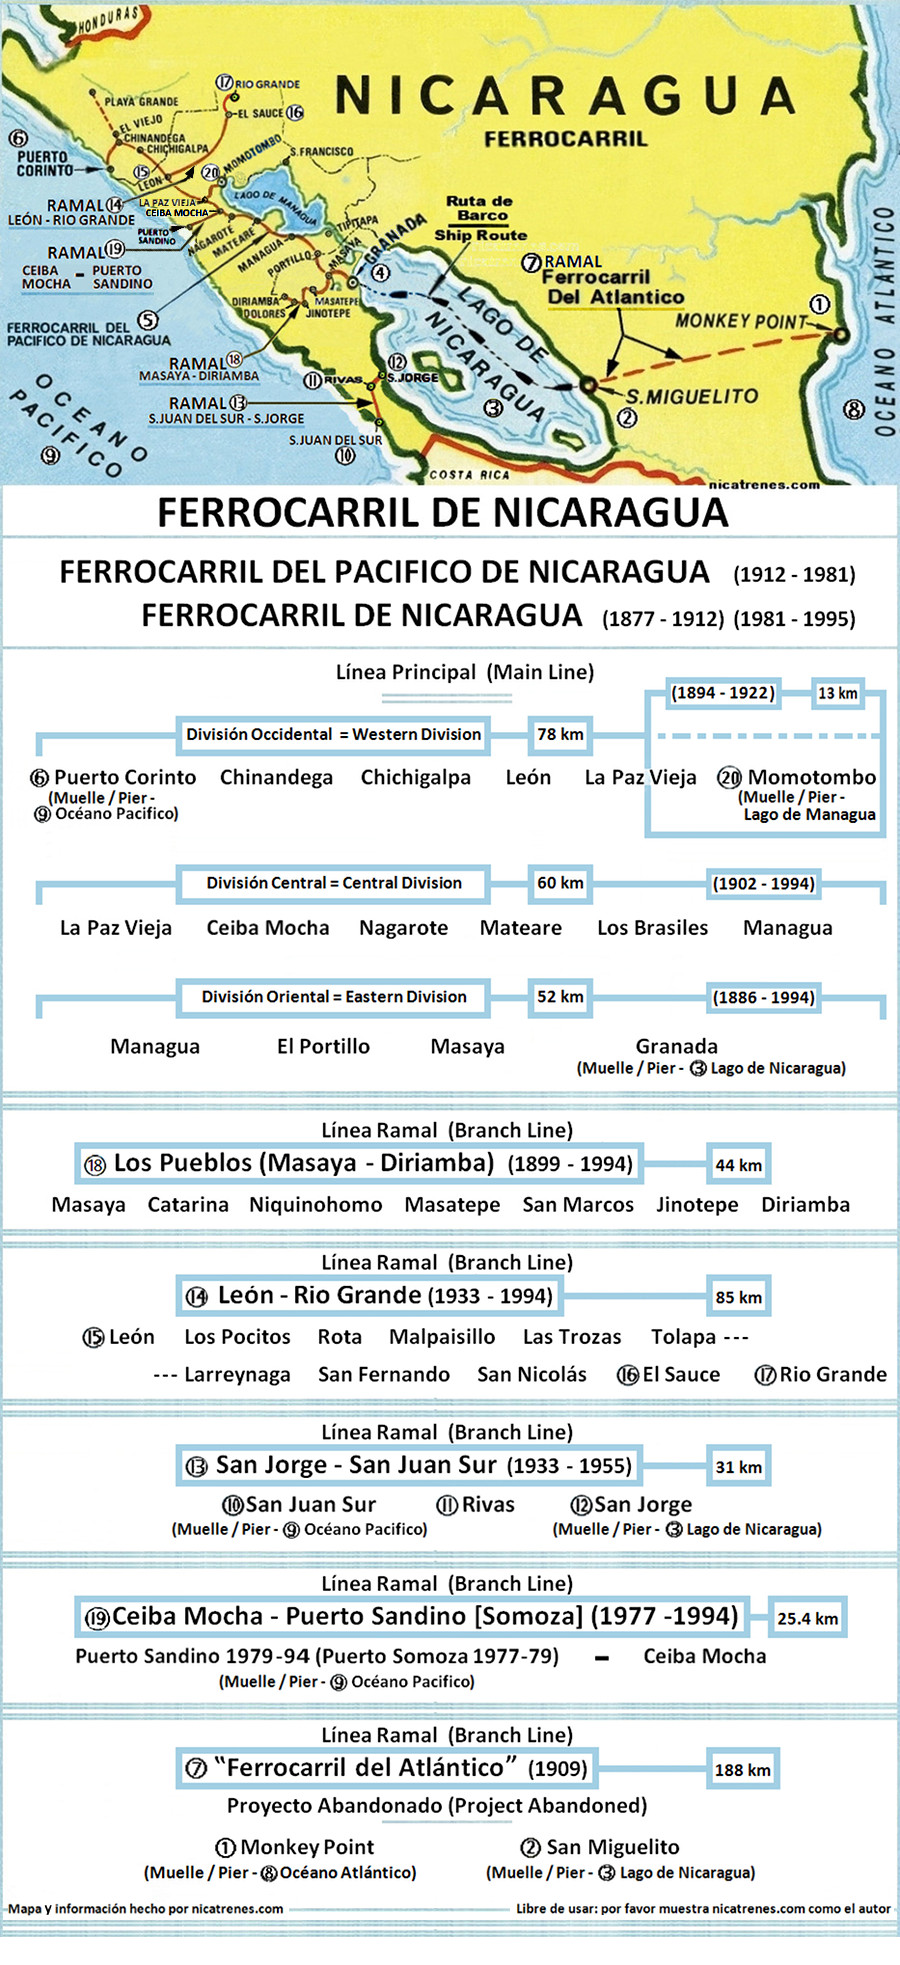 Map "Ferrocarril de Nicaragua" nicatrenes dot com